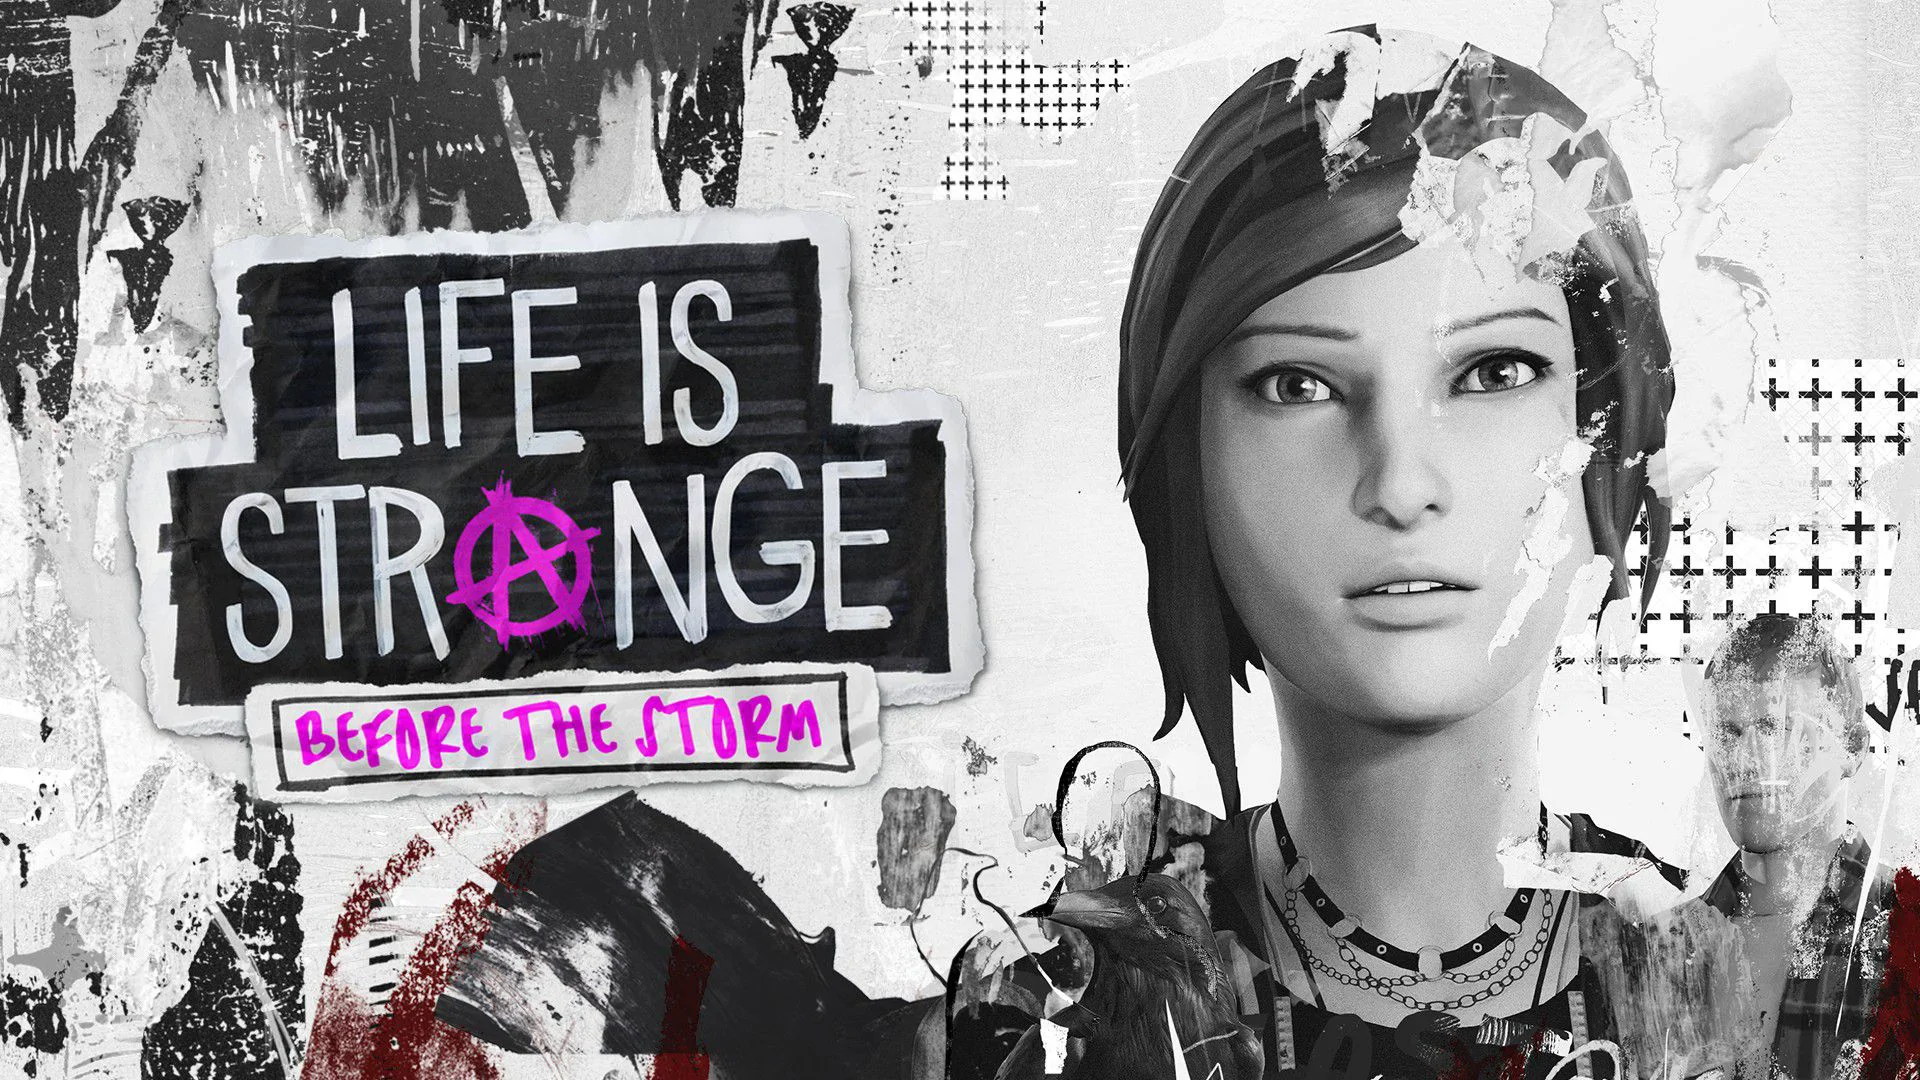 Zagrajmy w to jeszcze raz – Life is Strange: Before the Storm. Punks not dead